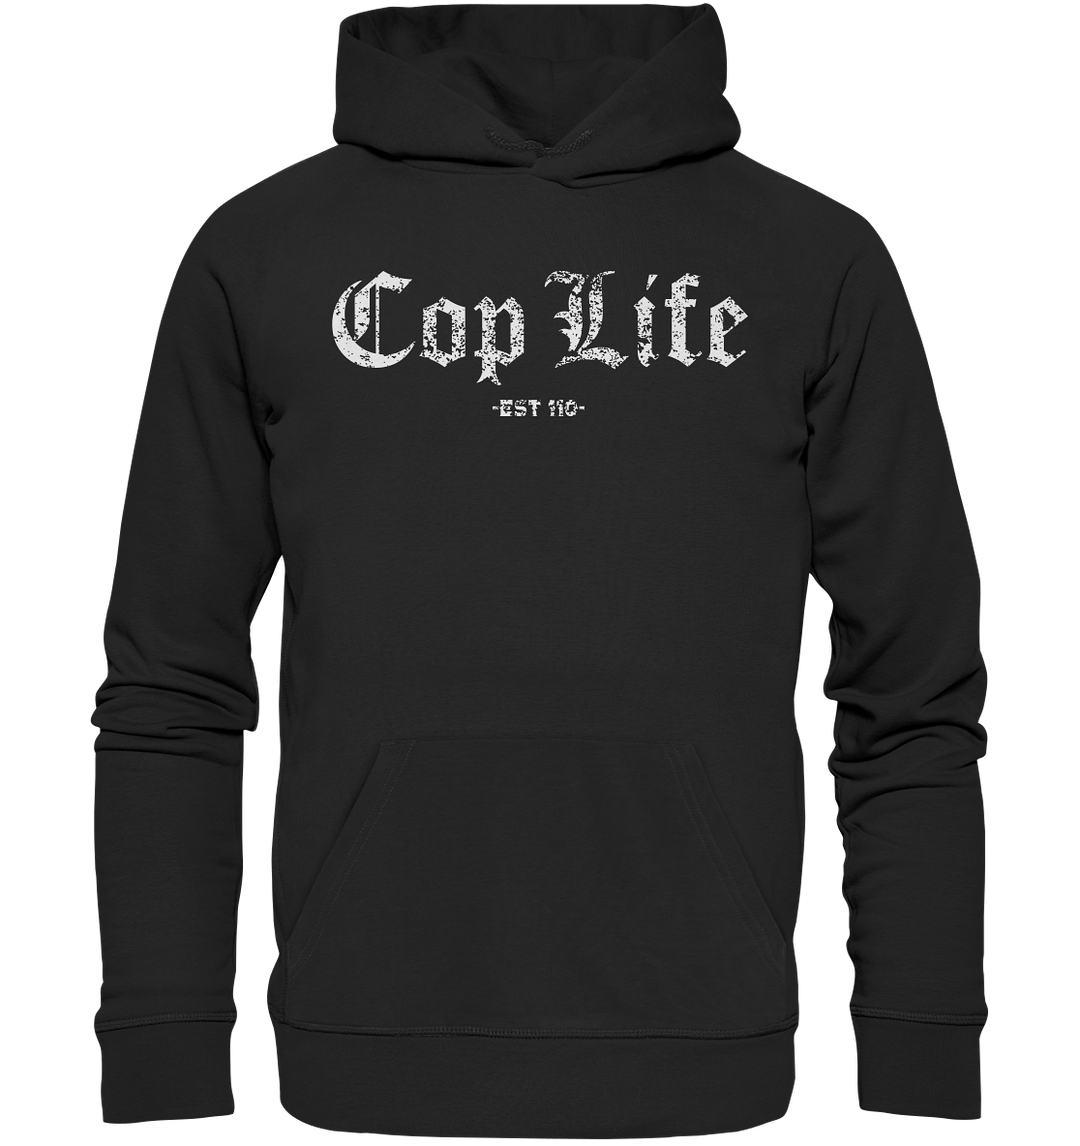 "Cop Life" - Premium Unisex Hoodie